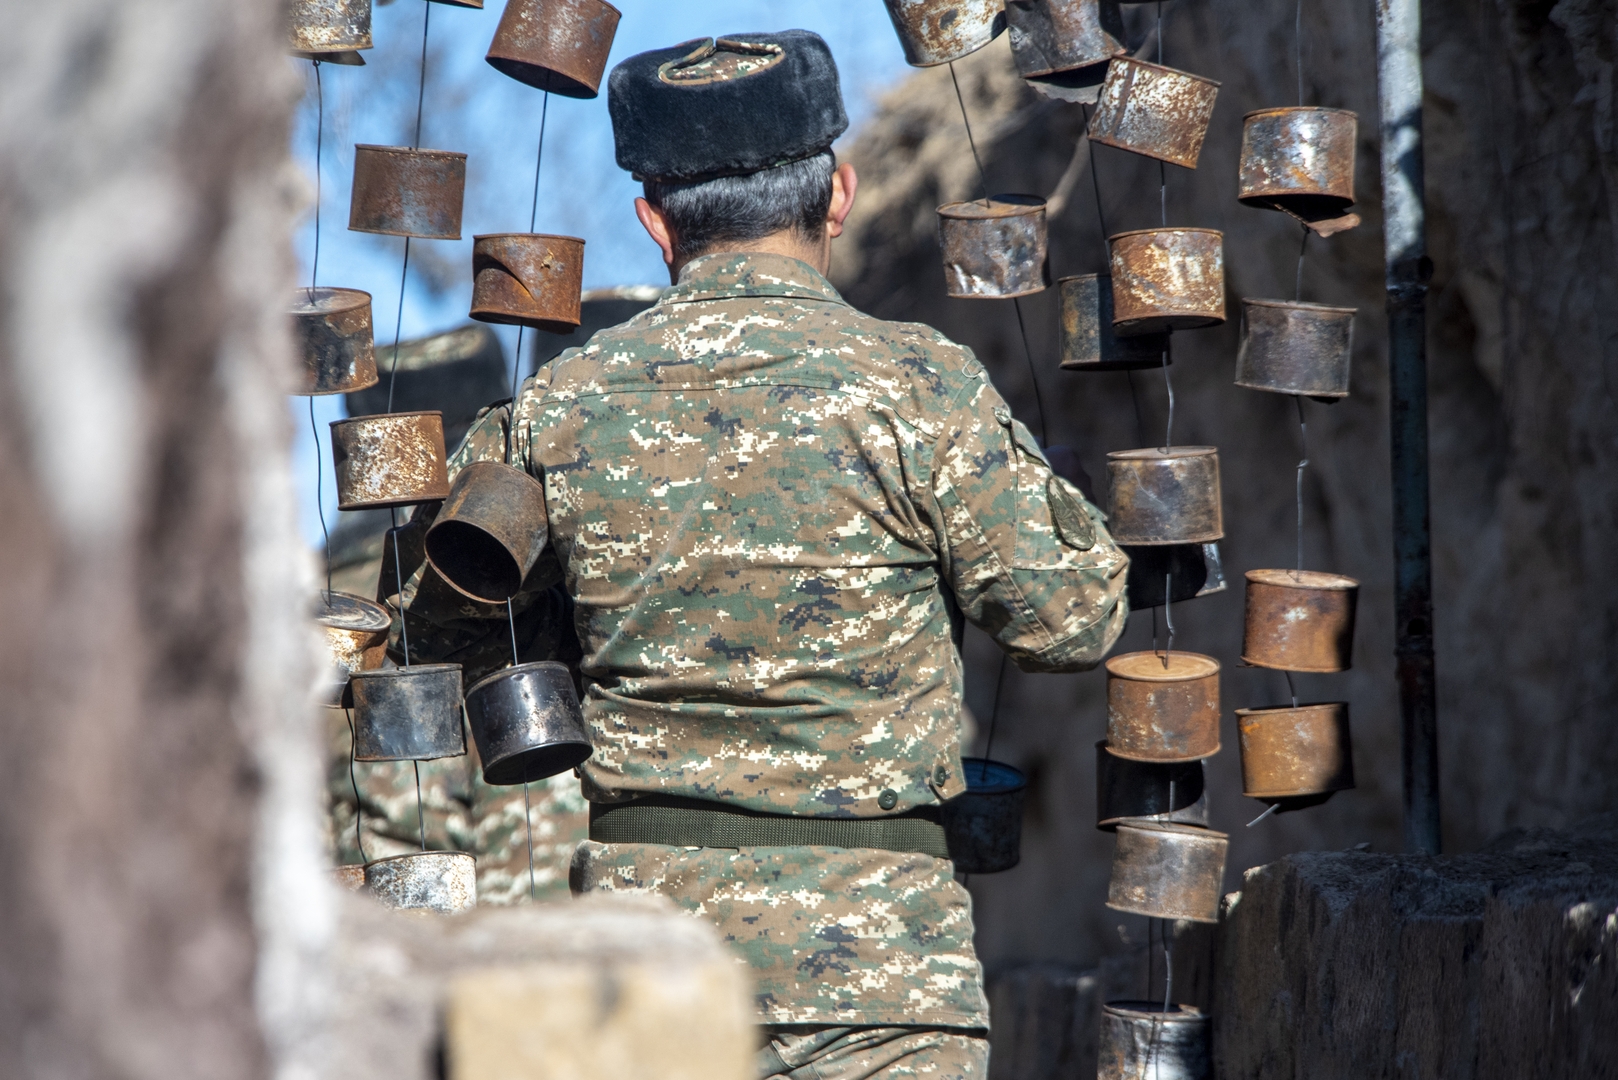 تبادل لإطلاق النار بين قوات أرمينيا وأذربيجان عند الحدود